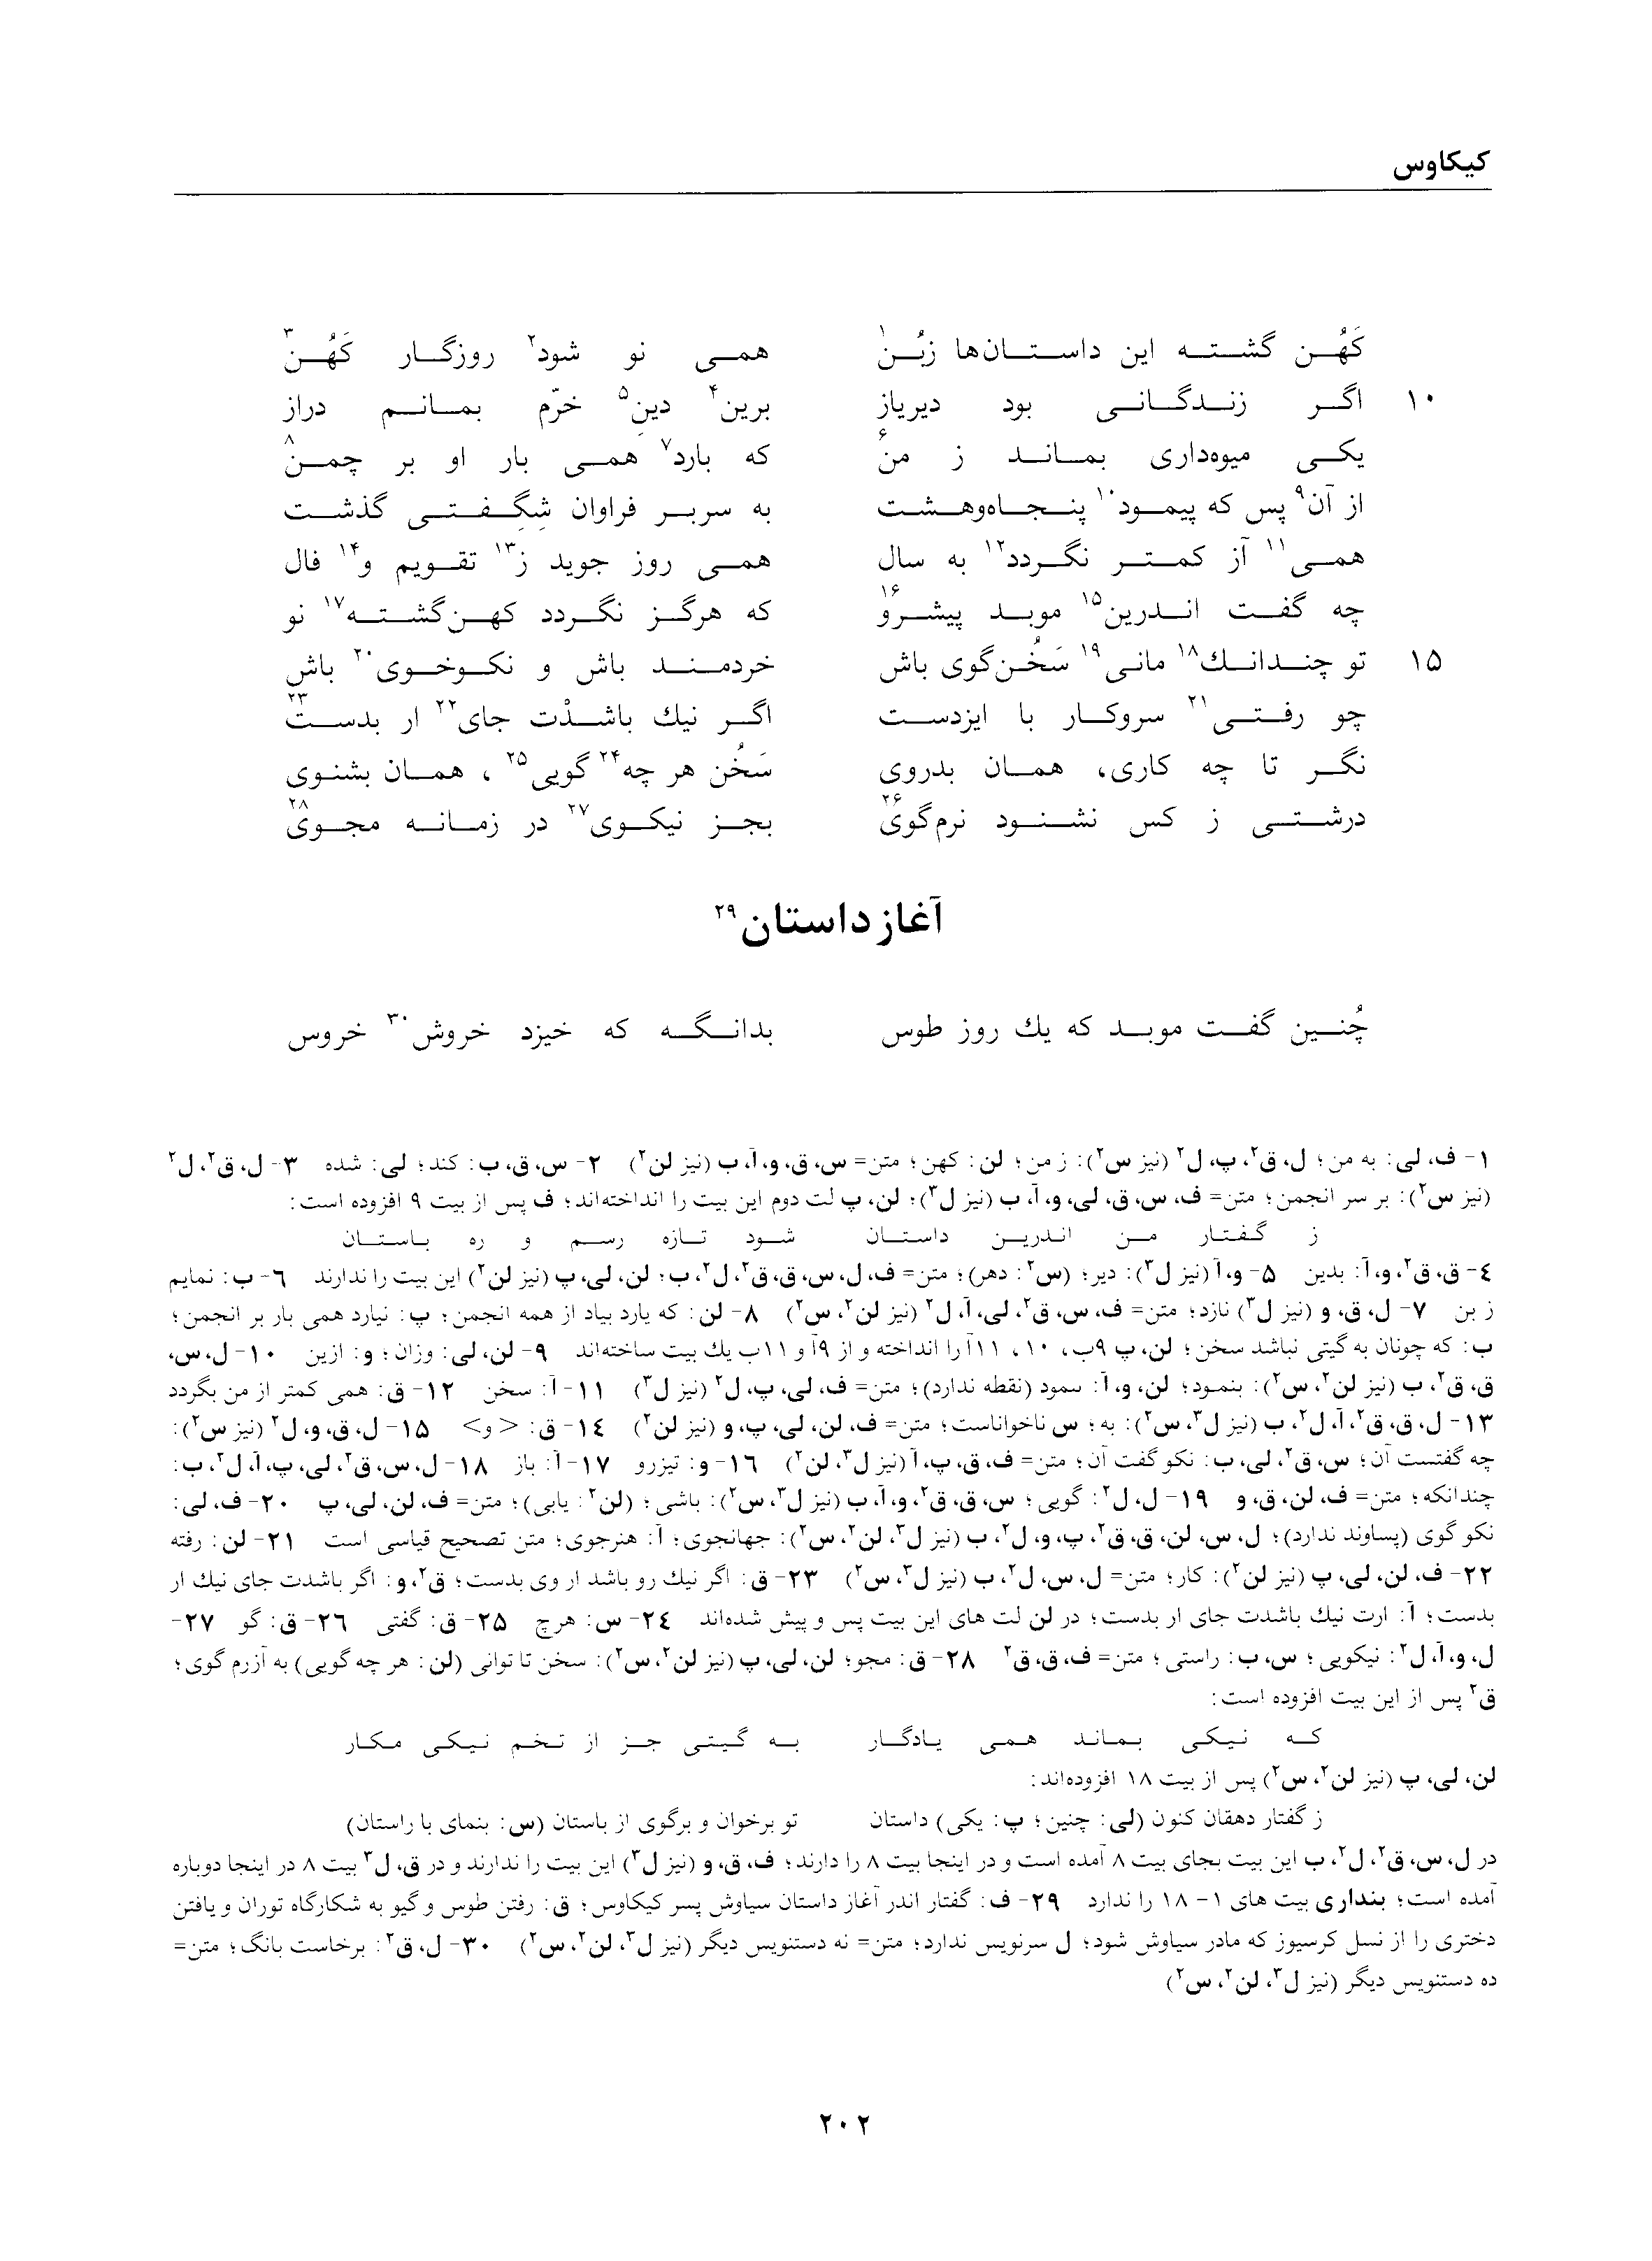 vol. 2, p. 202